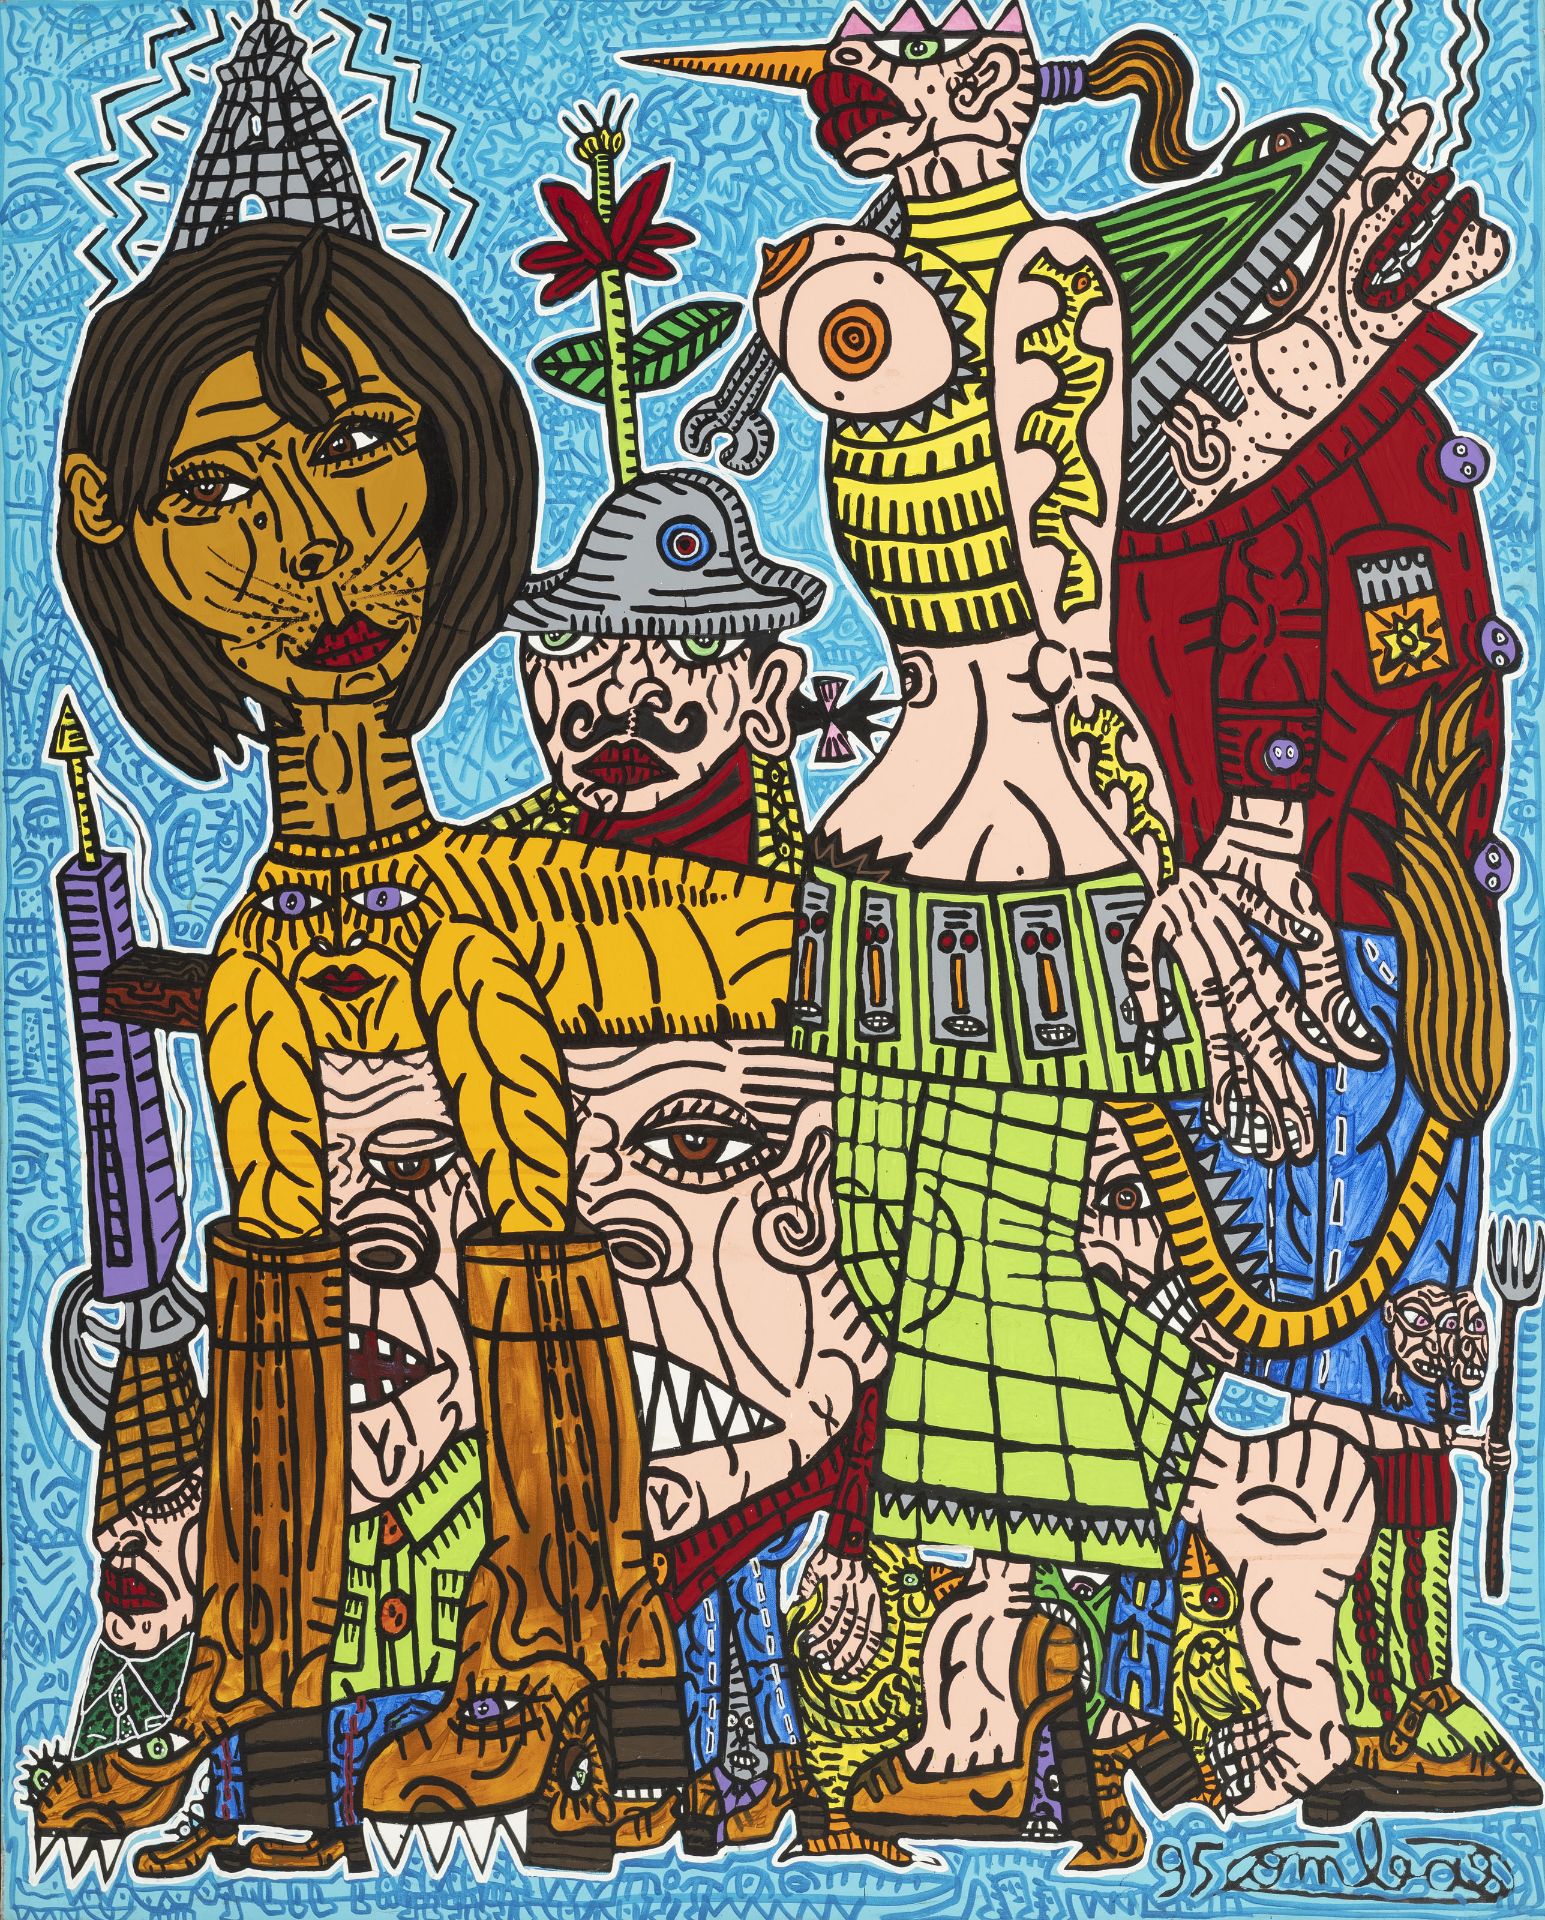 Robert Combas (1957), La bande de joyeux tristes , 1995, acrylique sur toile, signée et datée, 162x